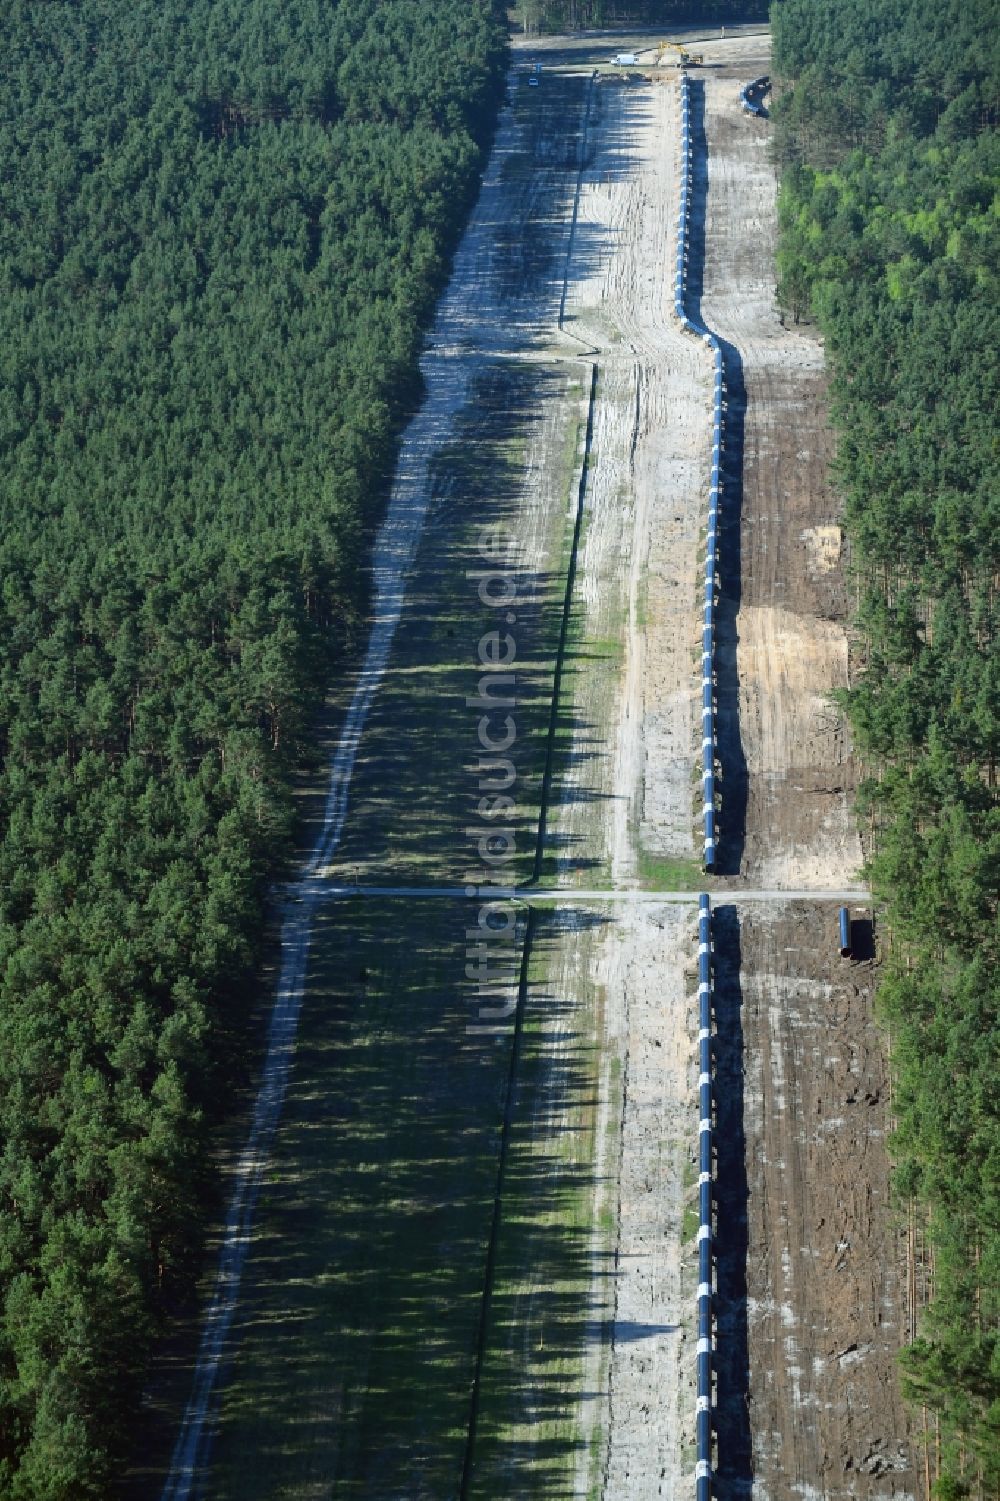 Groß Köris von oben - Baustelle zur Verlegung von Leitungs- Rohren der EUGAL Trasse in einem Wald bei Groß Köris im Bundesland Brandenburg, Deutschland